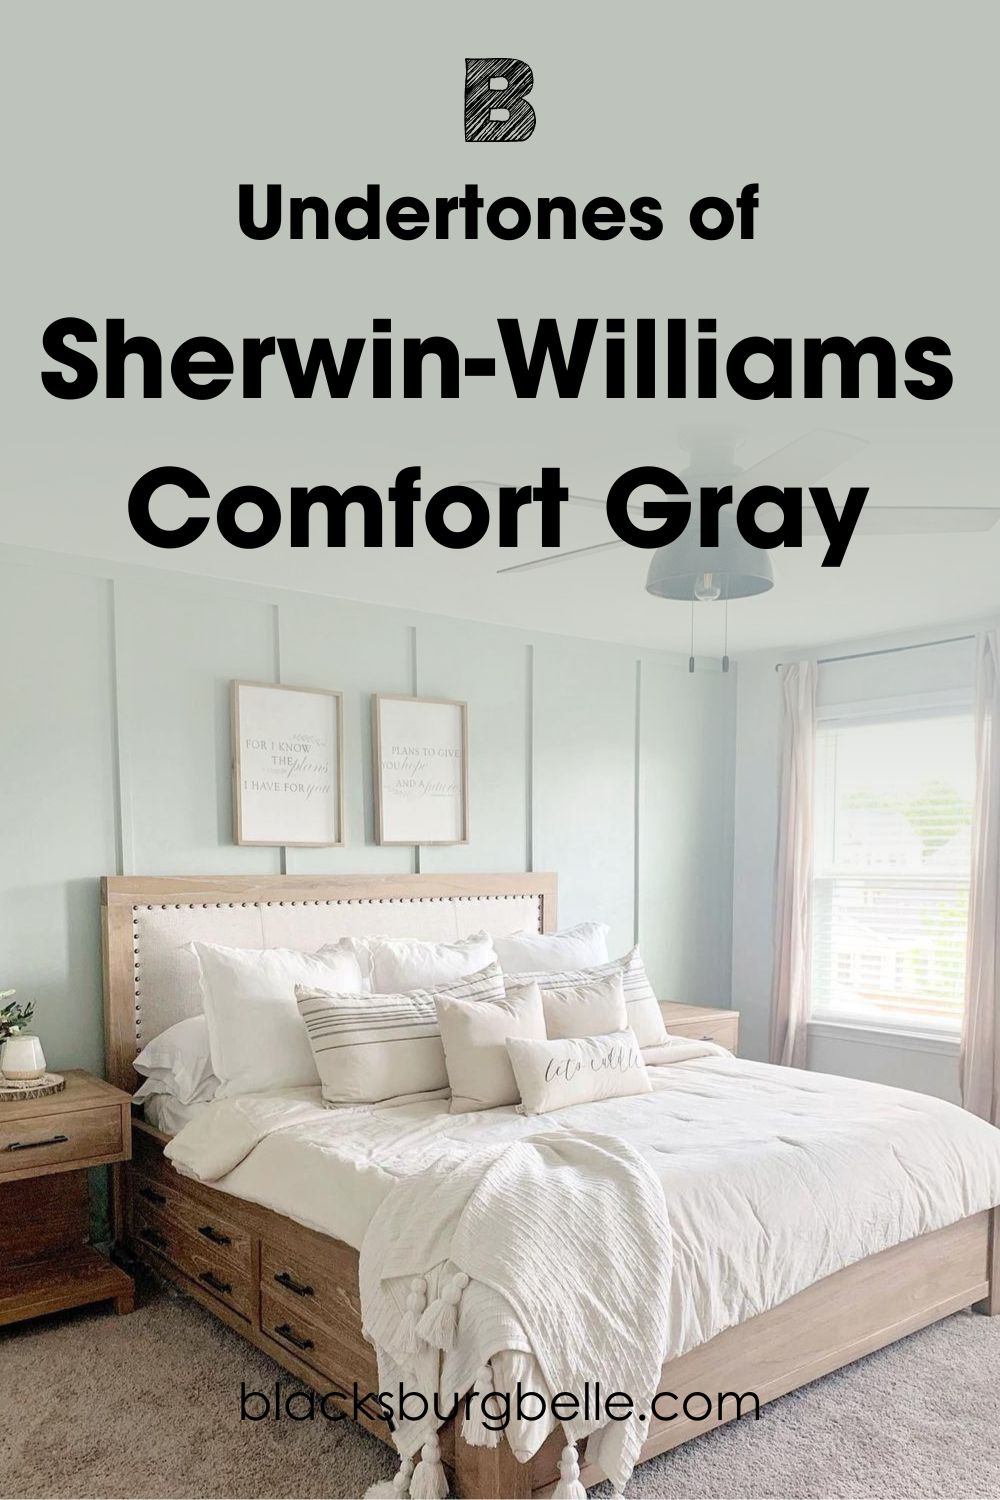 Undertones of Sherwin-Williams Comfort Gray